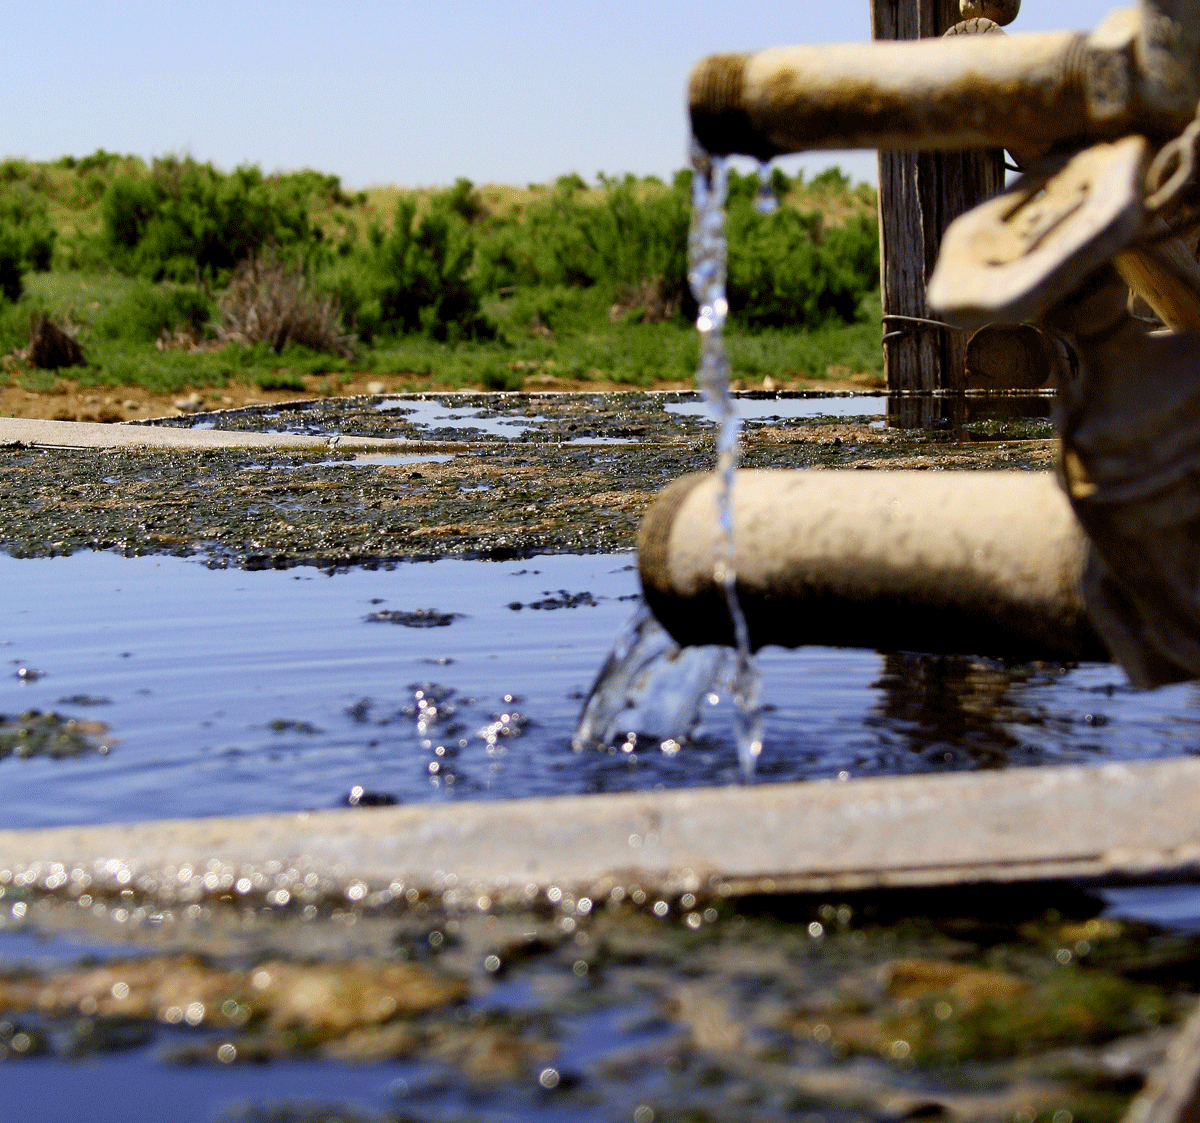 اسباب تلوث الماء , المياة وفوائدها واسباب تلوثها - كلام نسوان